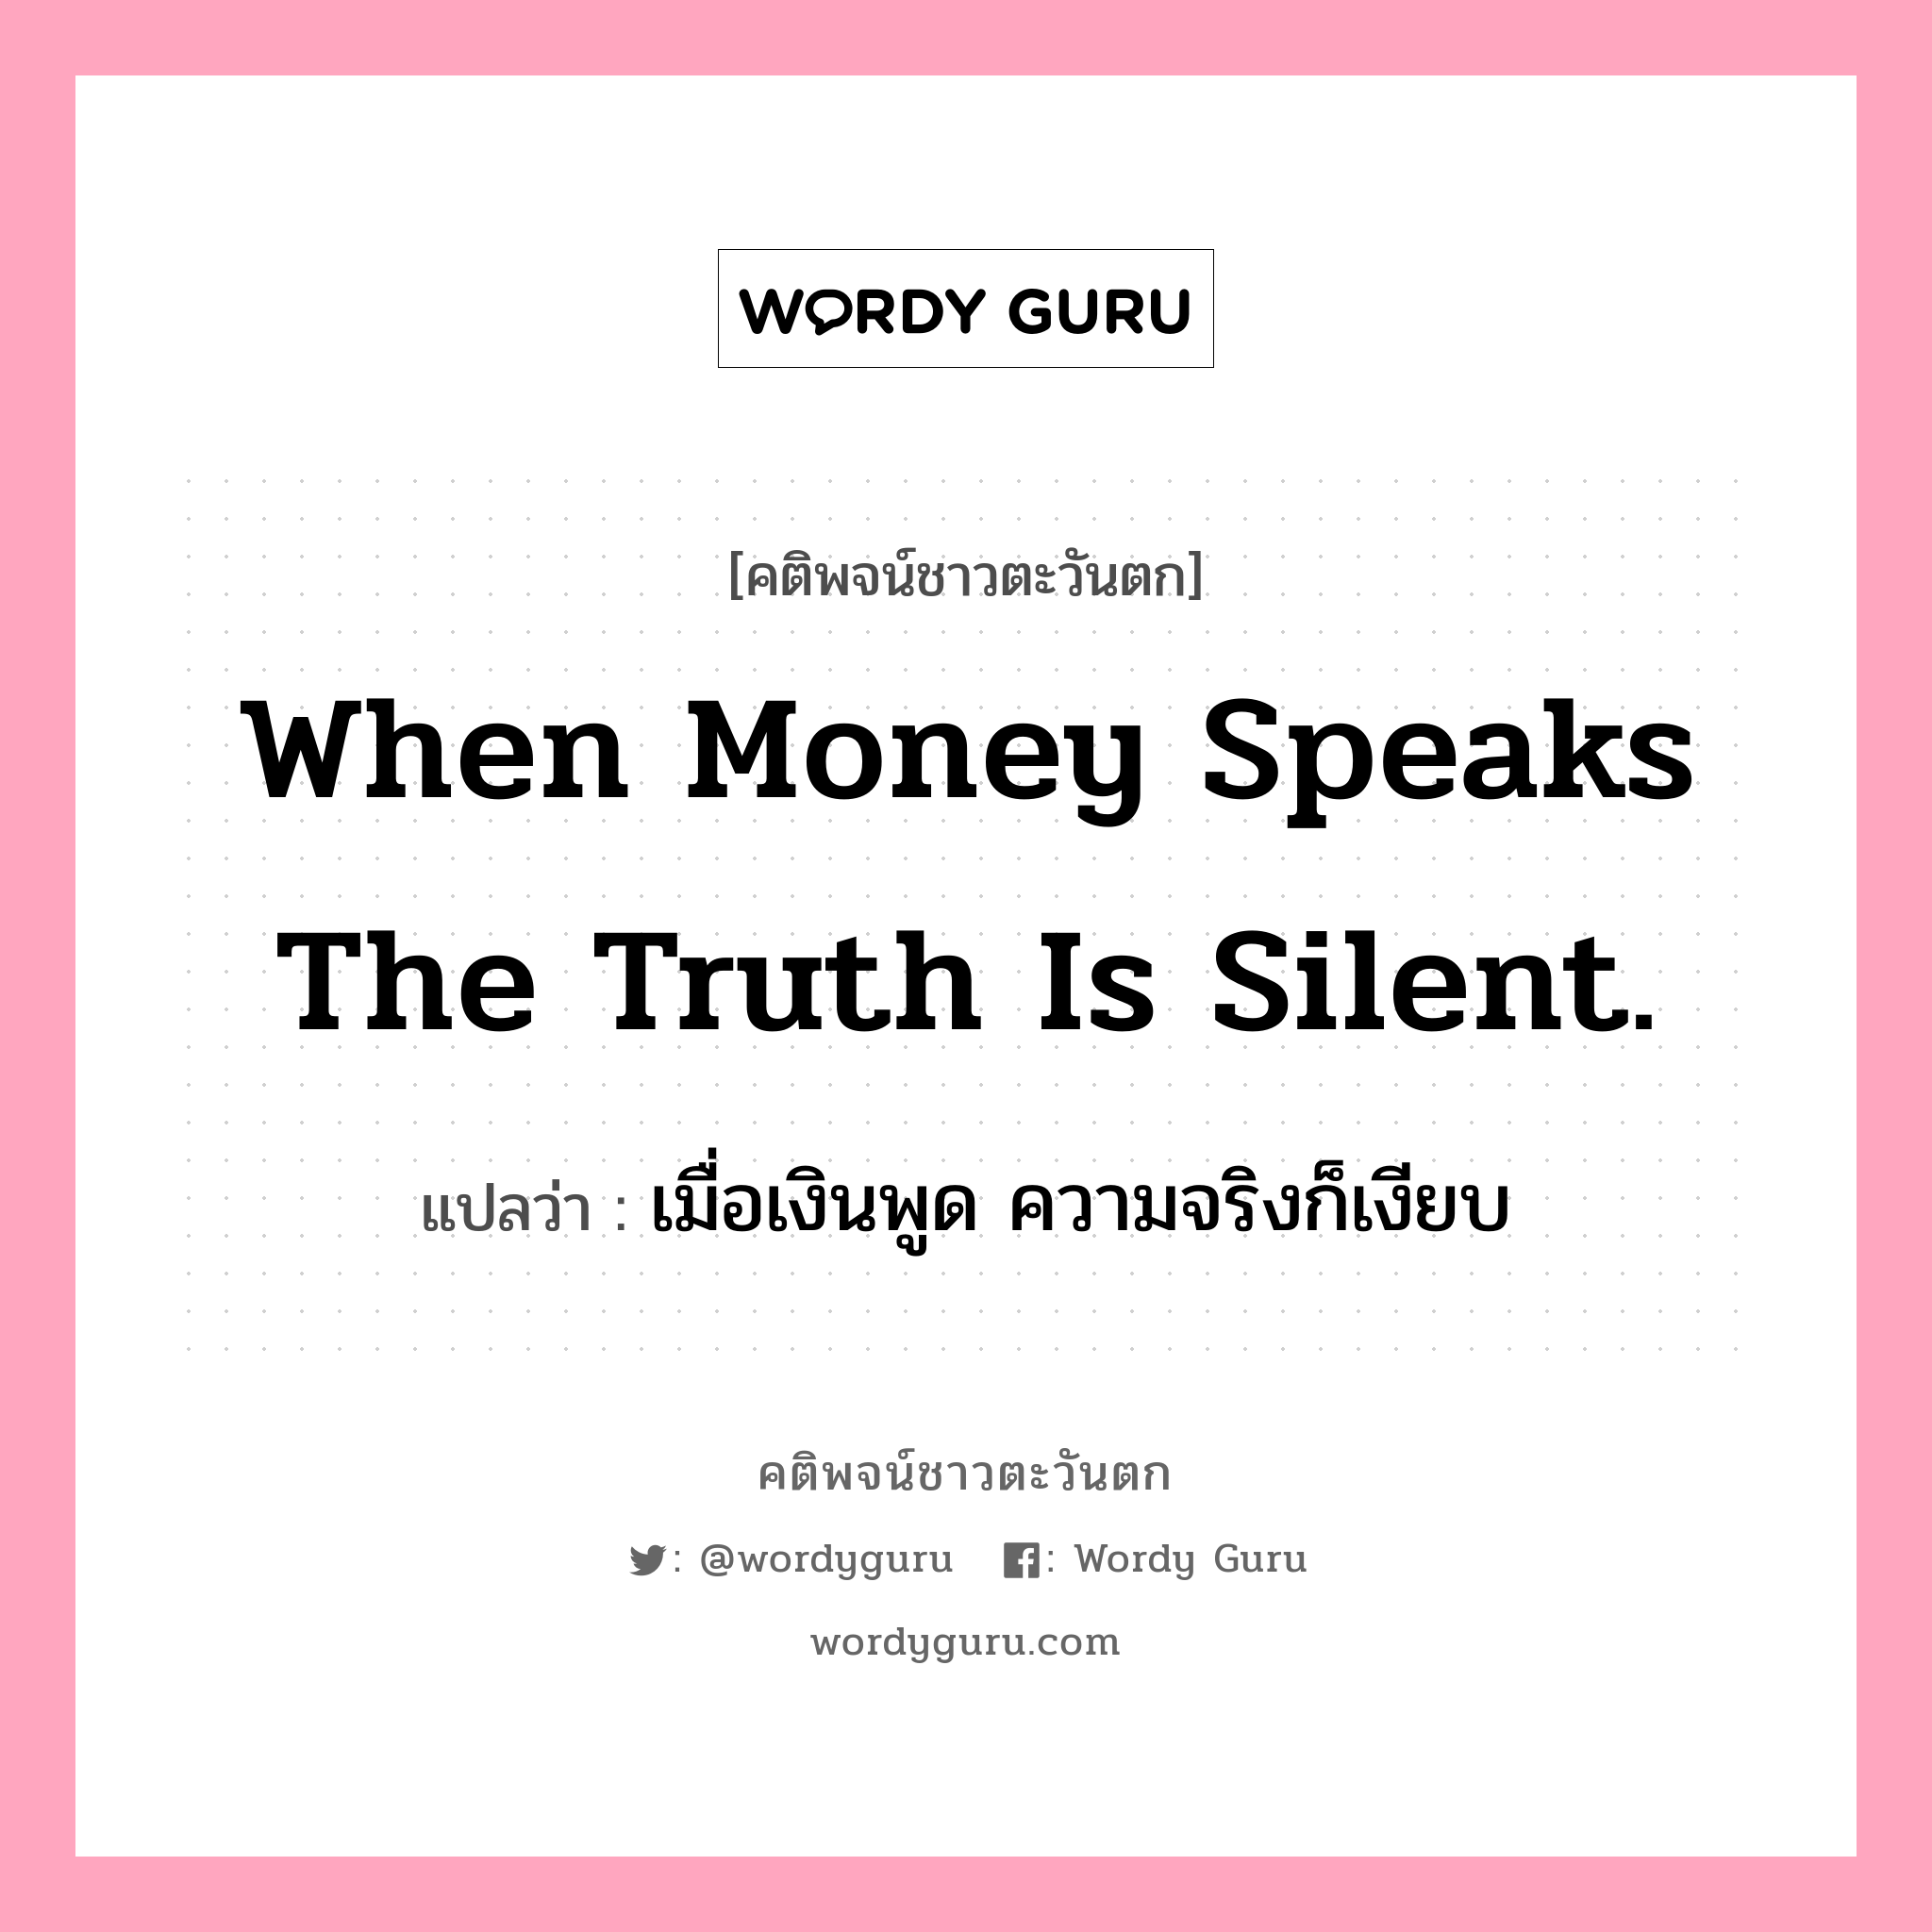 When money speaks the truth is silent., คติพจน์ชาวตะวันตก When money speaks the truth is silent. แปลว่า เมื่อเงินพูด ความจริงก็เงียบ